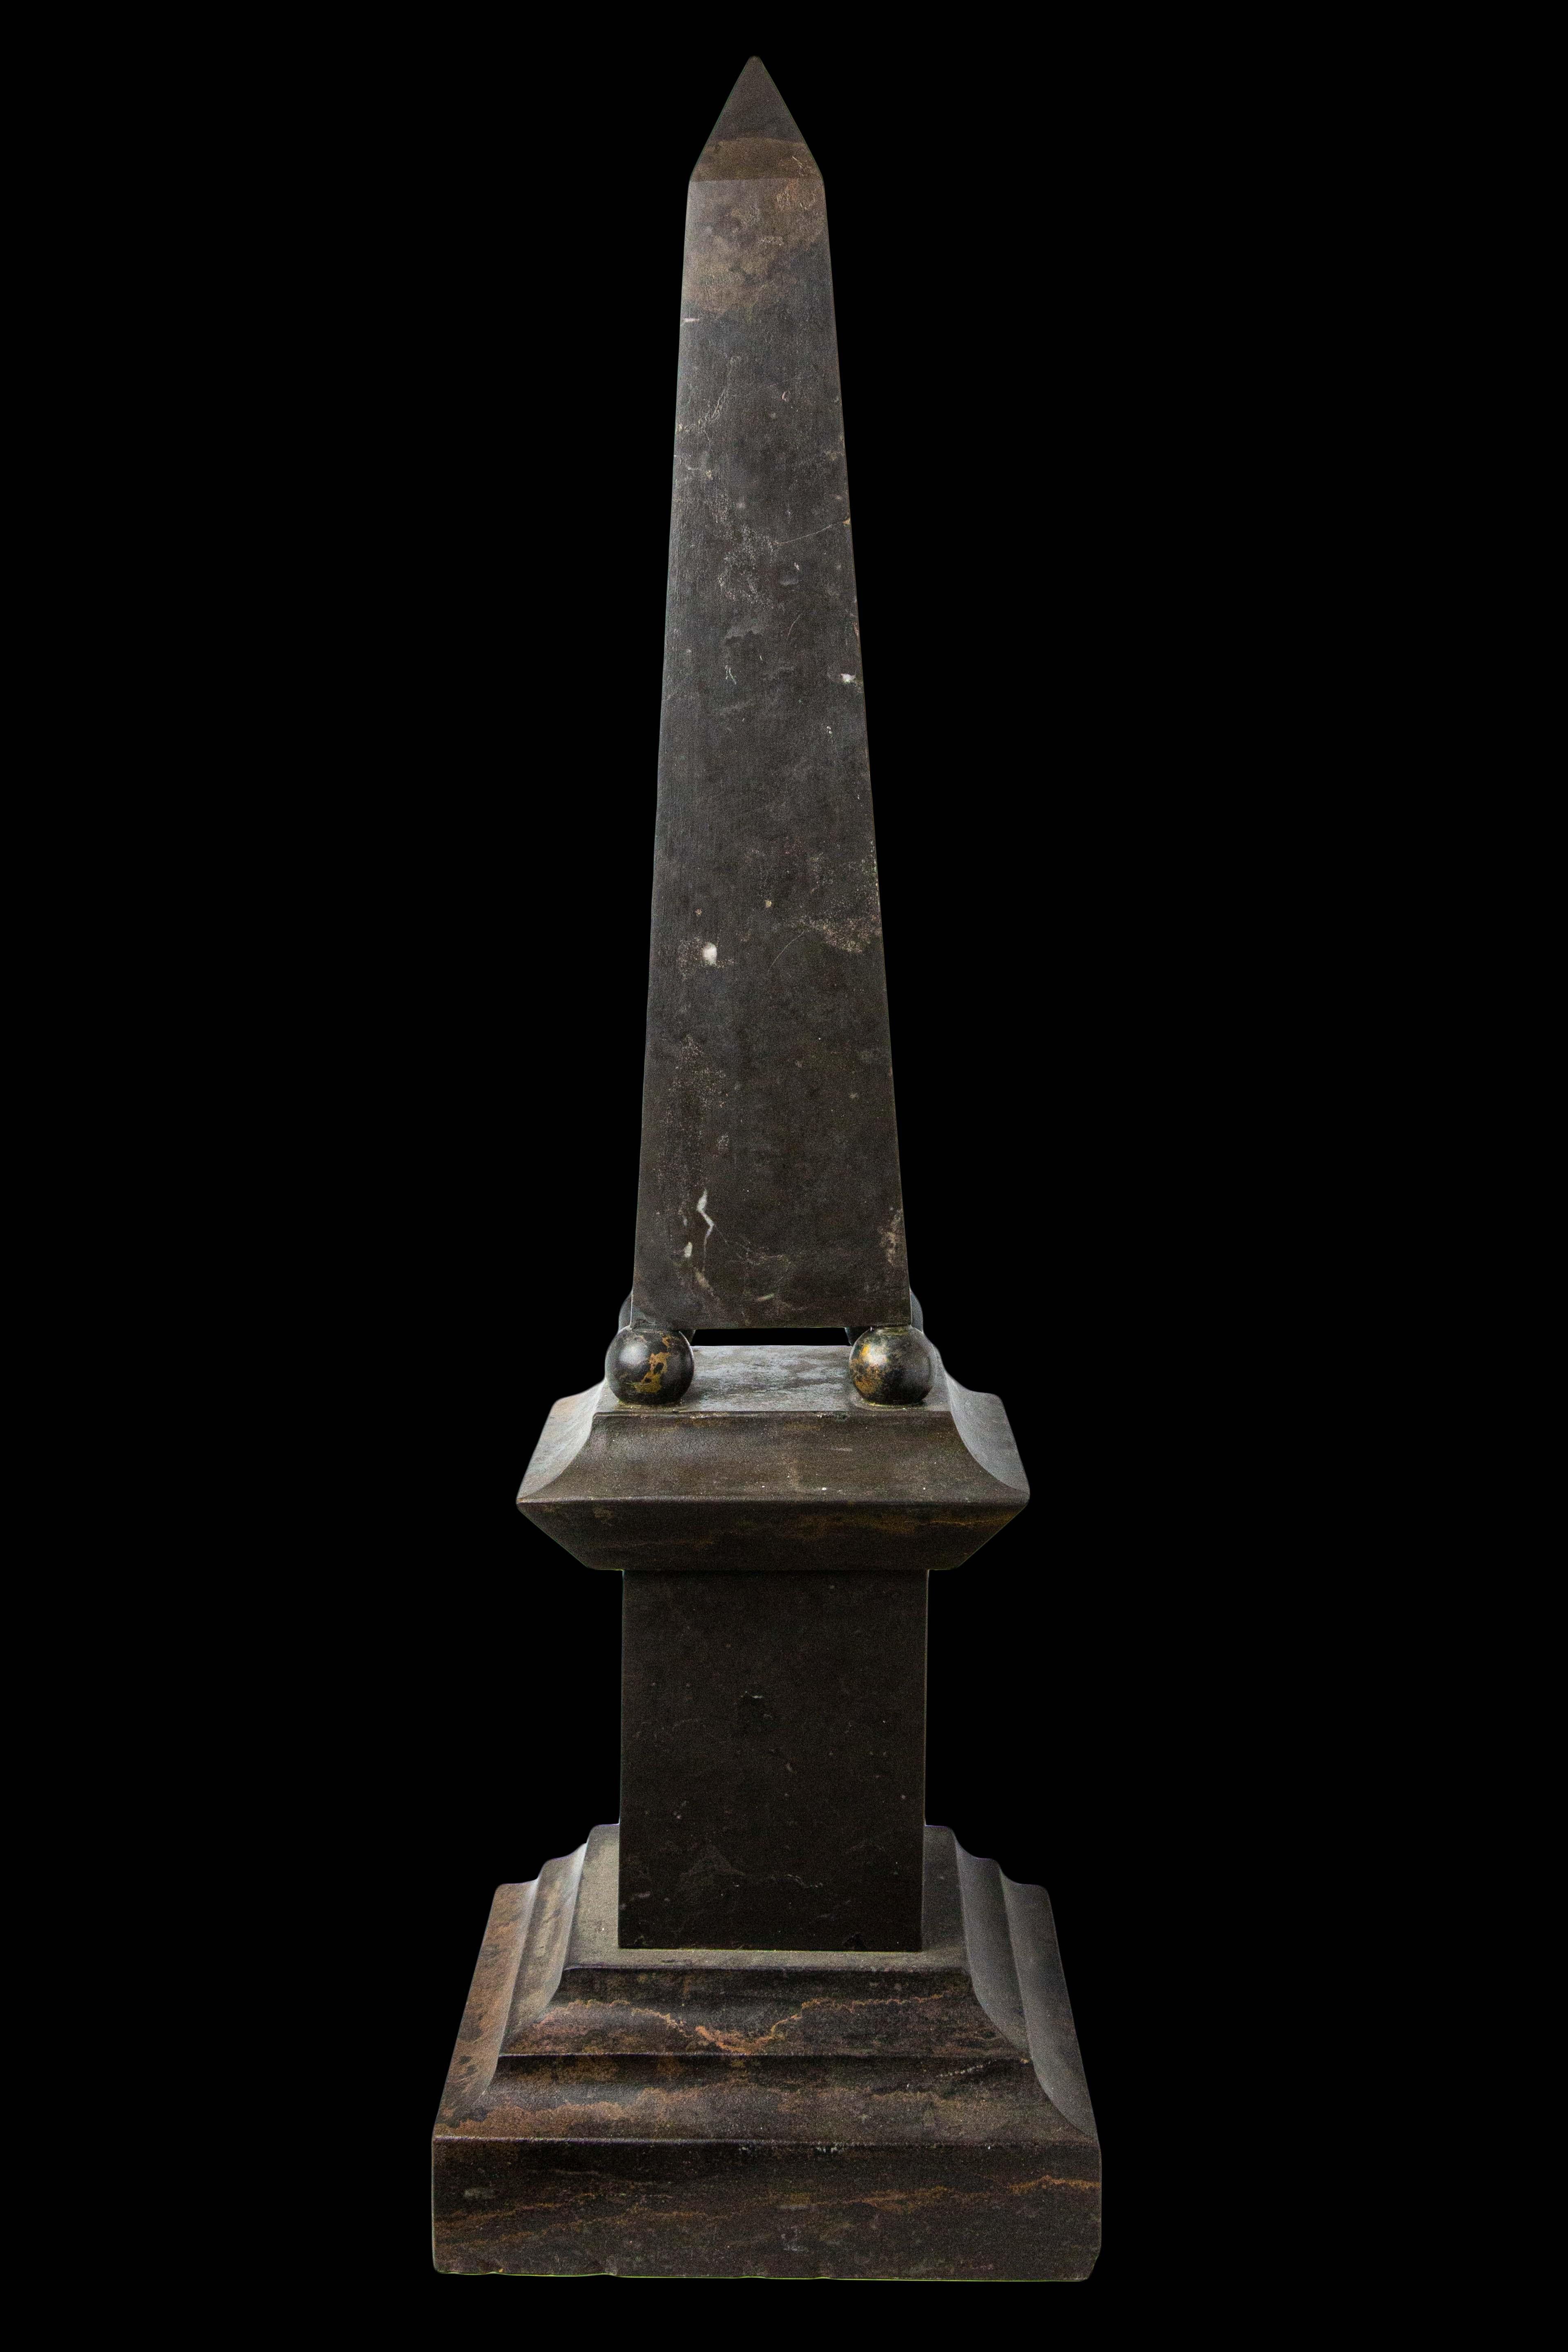 Großer Obelisk aus Stein und Metall:

Maße: 8.5